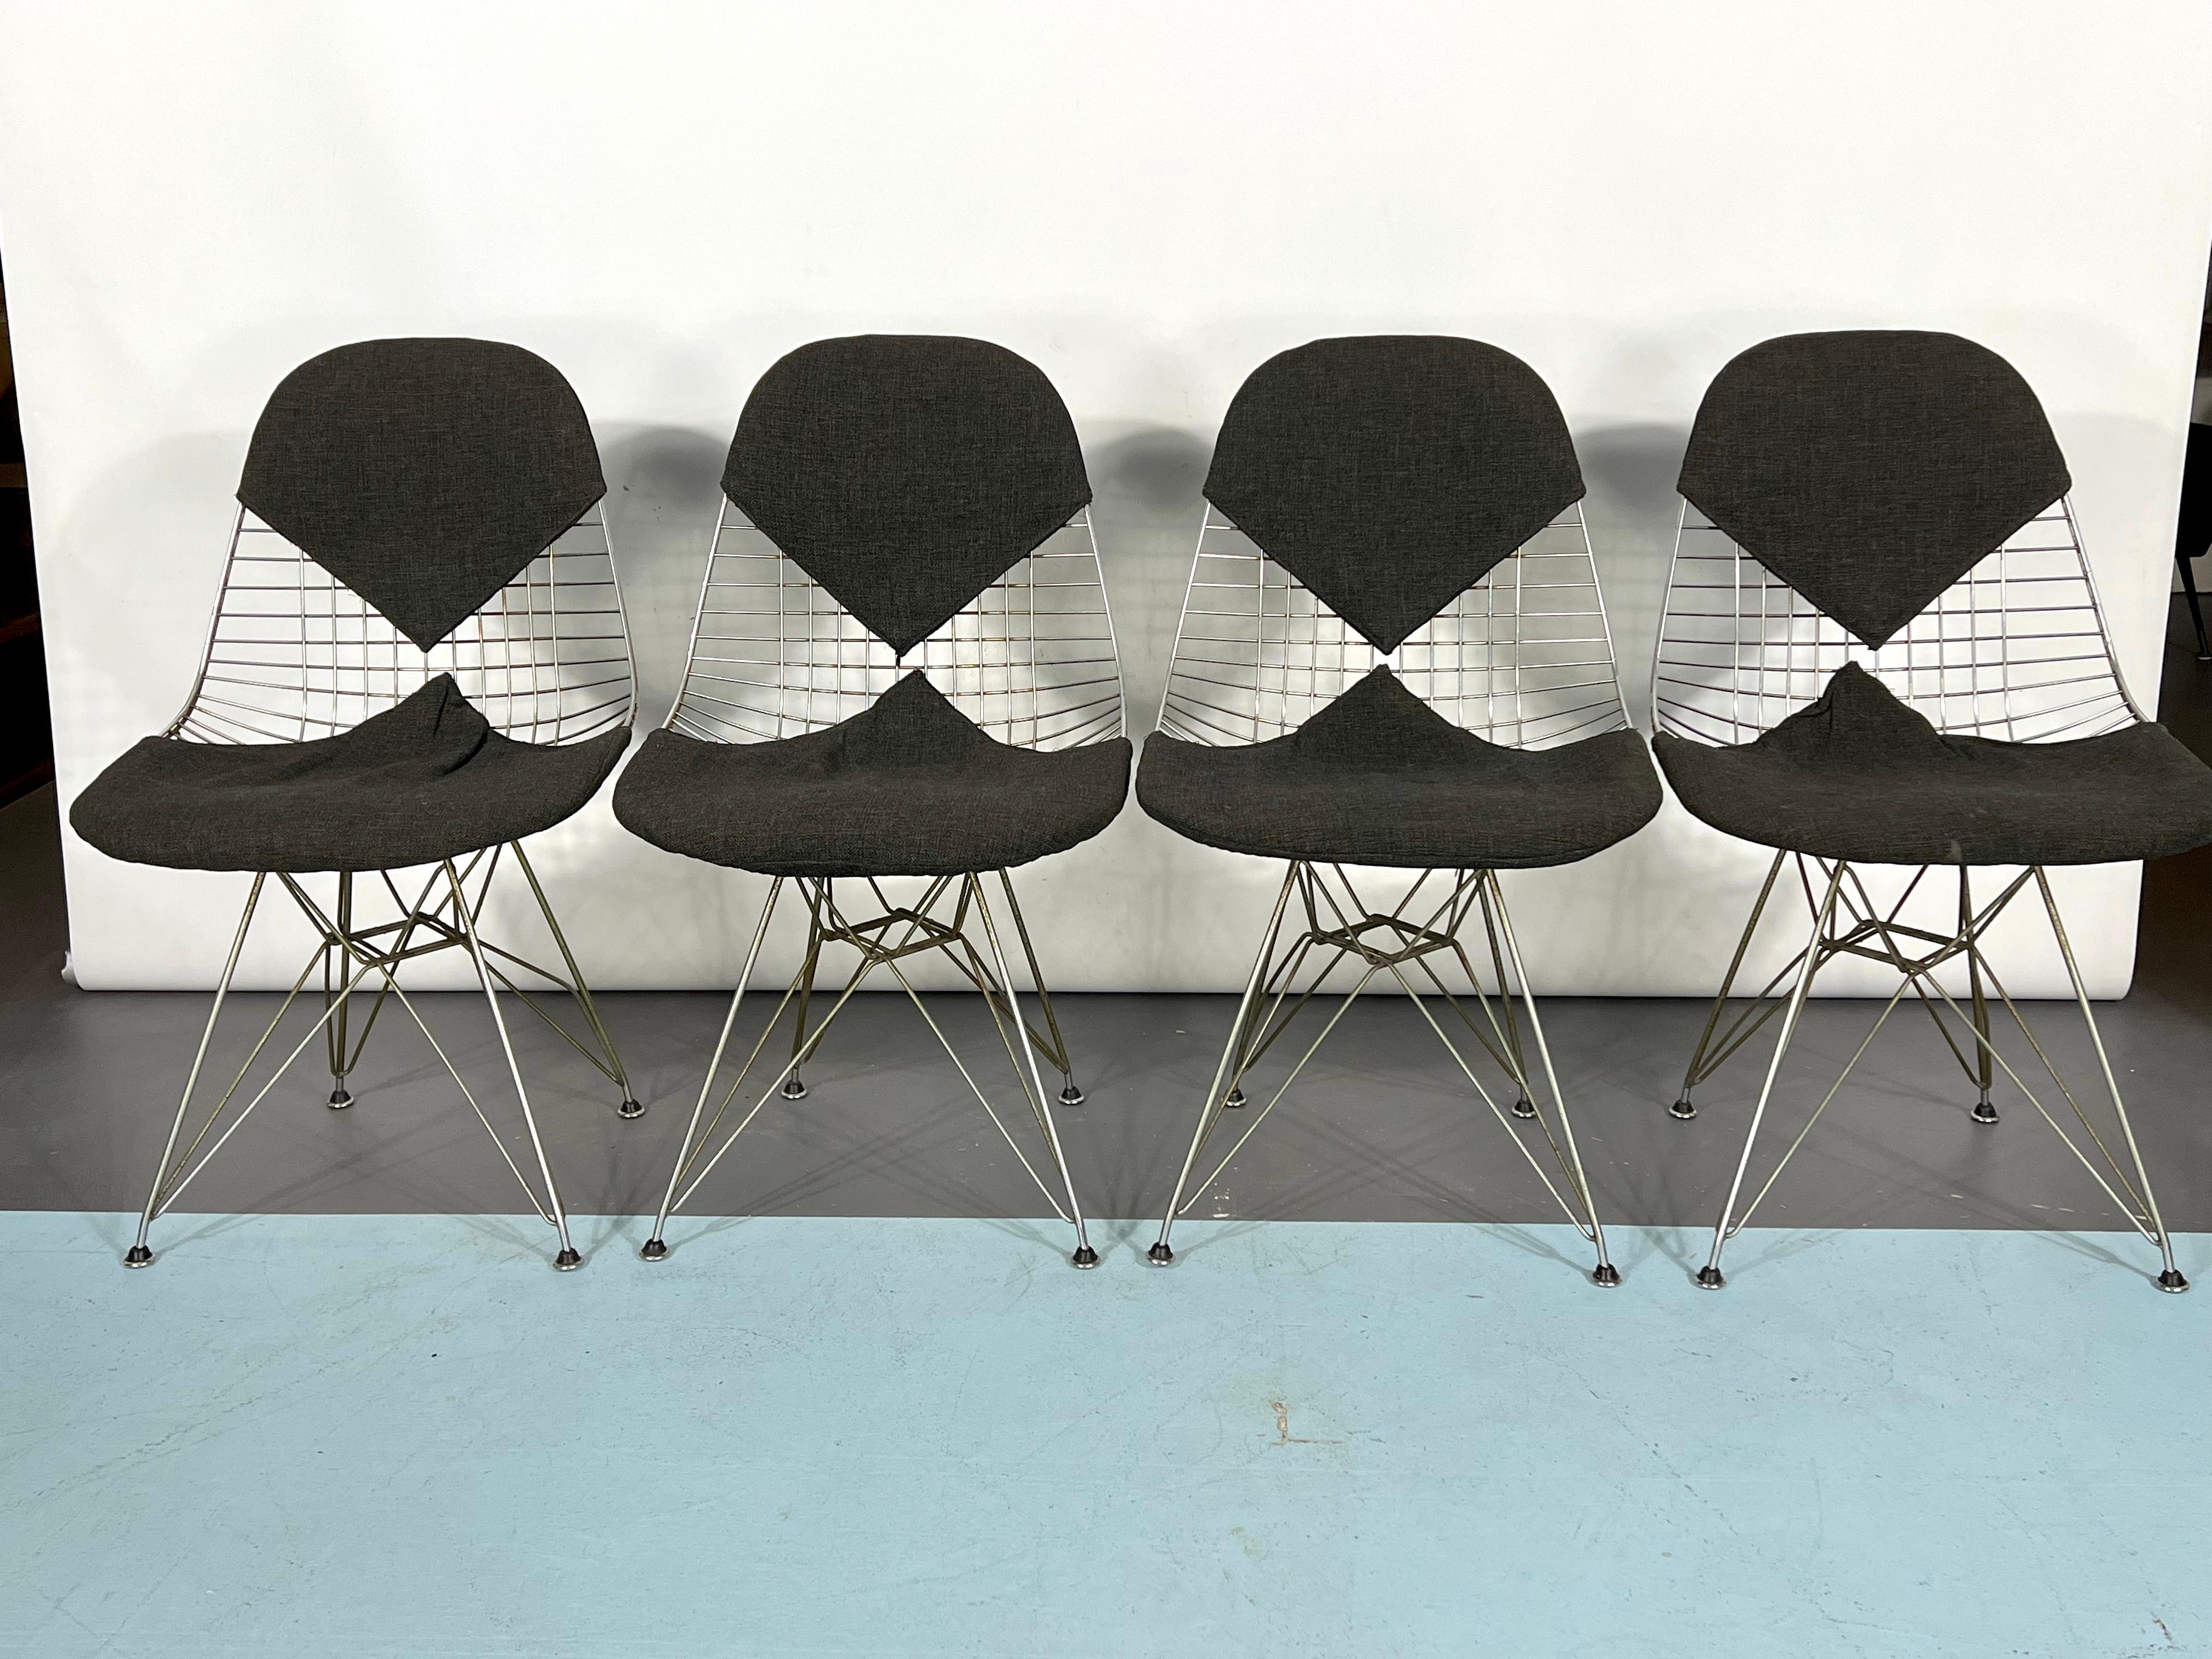 Guter Vintage-Zustand mit Alters- und Gebrauchsspuren für diesen Satz von vier Bikini-Stühlen, entworfen von Charles und Ray Eames für Herman Miller. Einige Rostflecken auf dem Metall. Original aus den 60er Jahren.